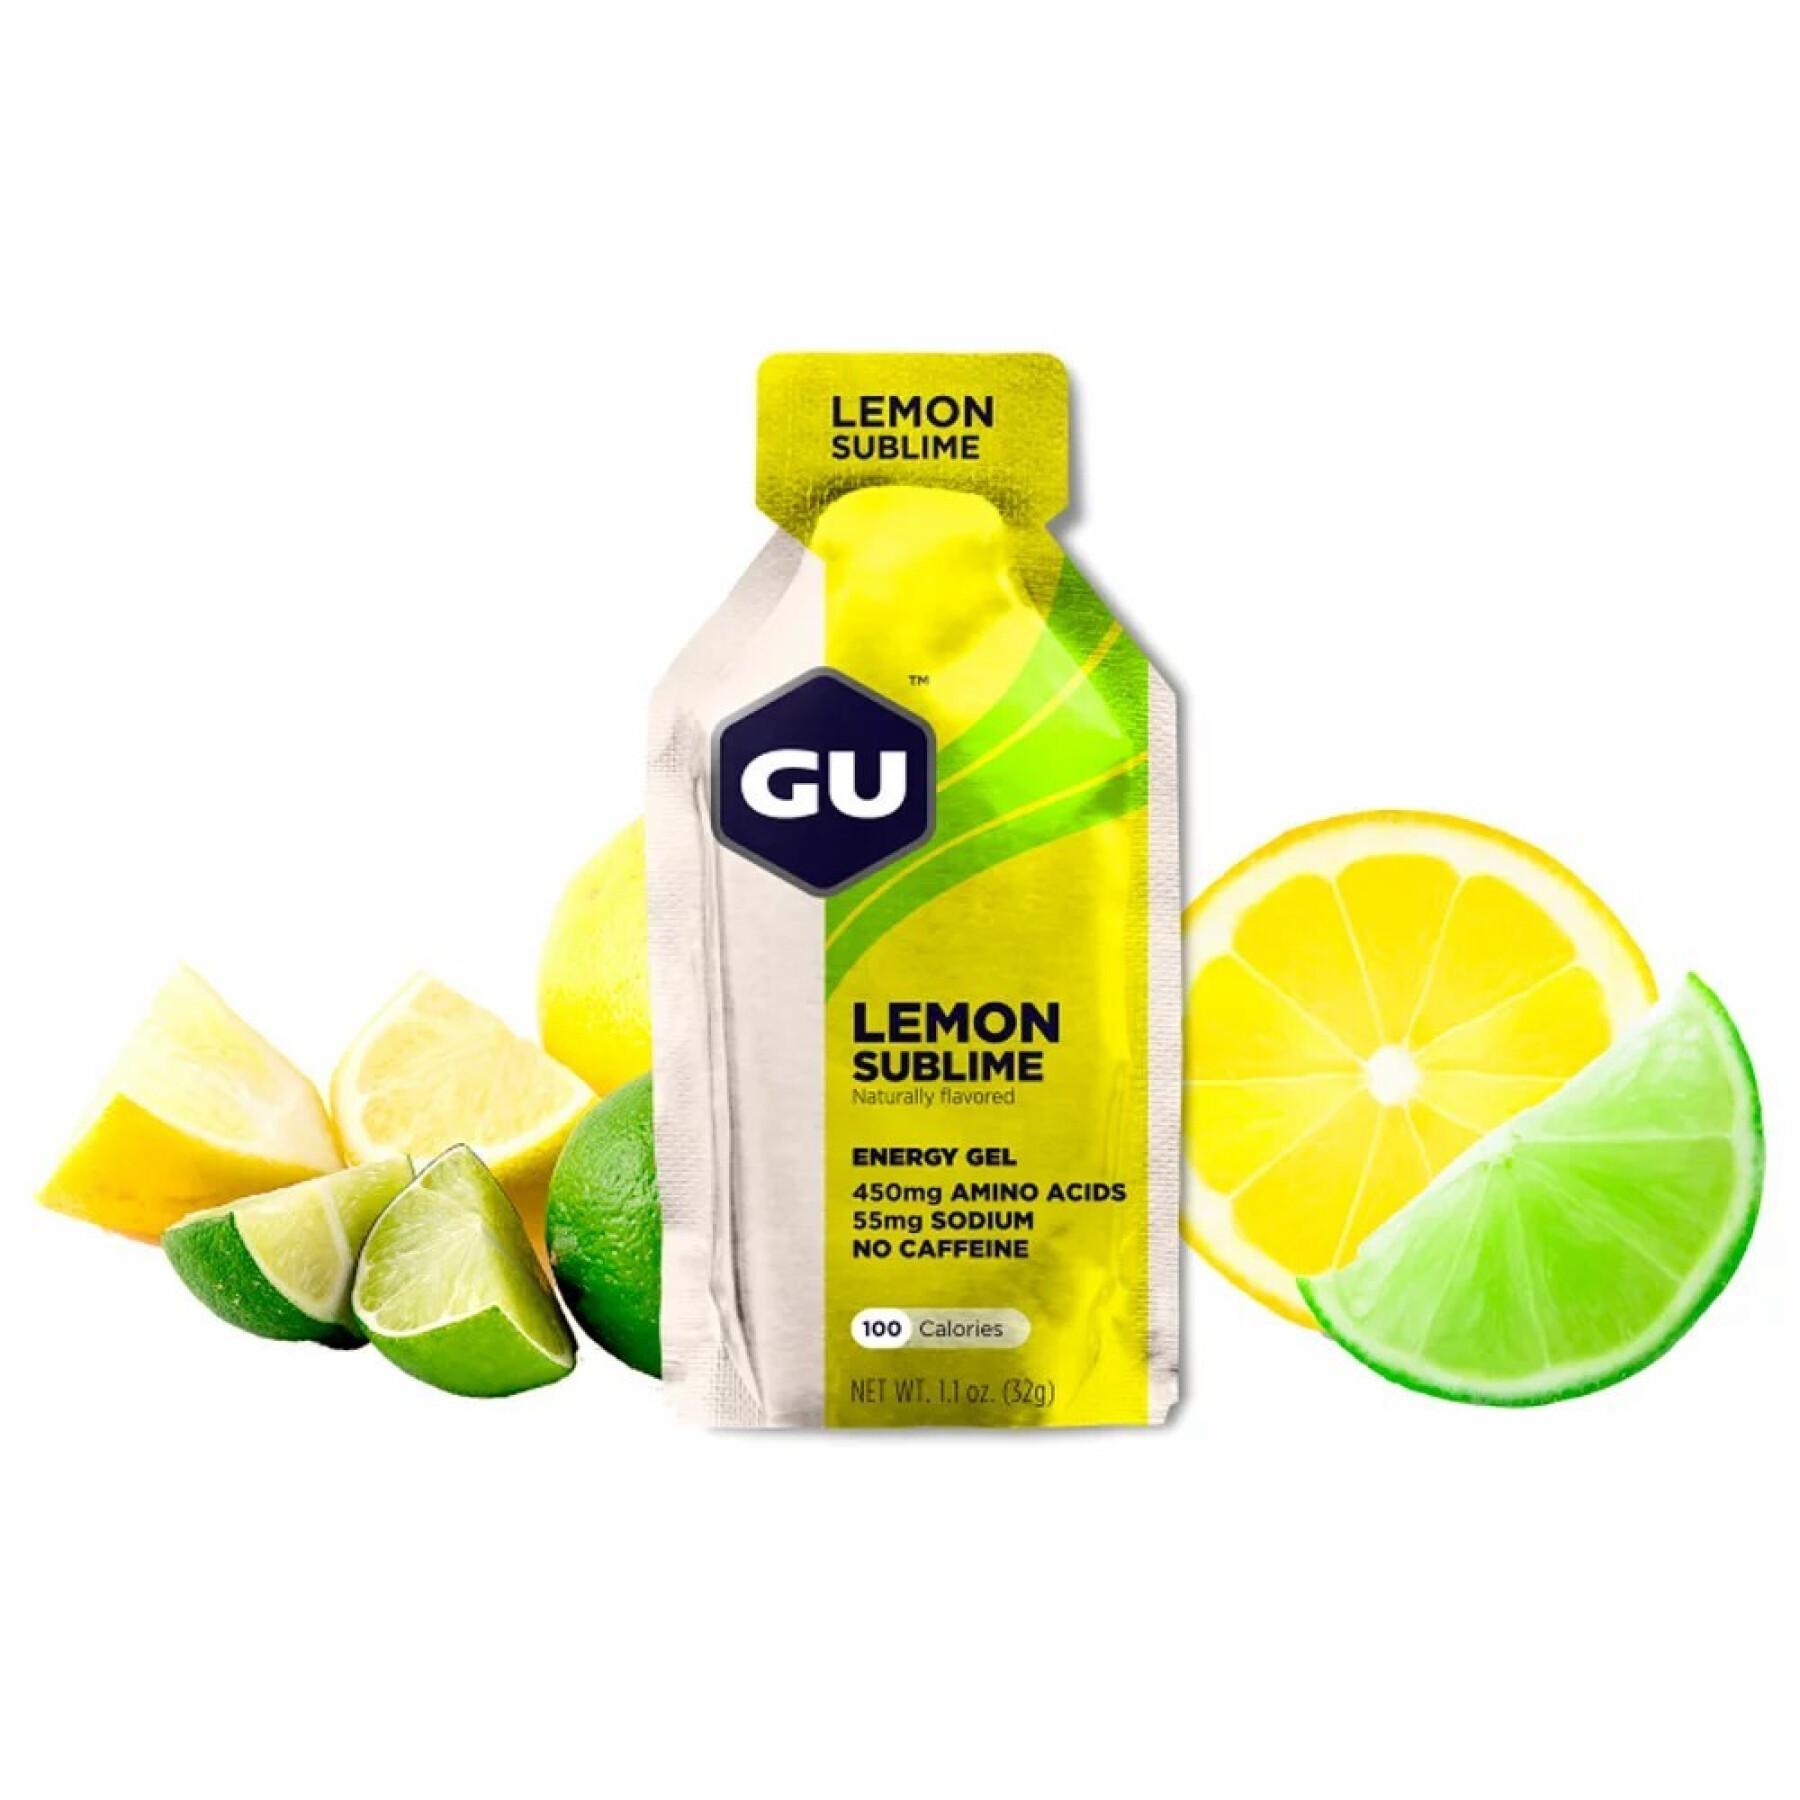 Géis energéticos - Limão intenso Gu Energy